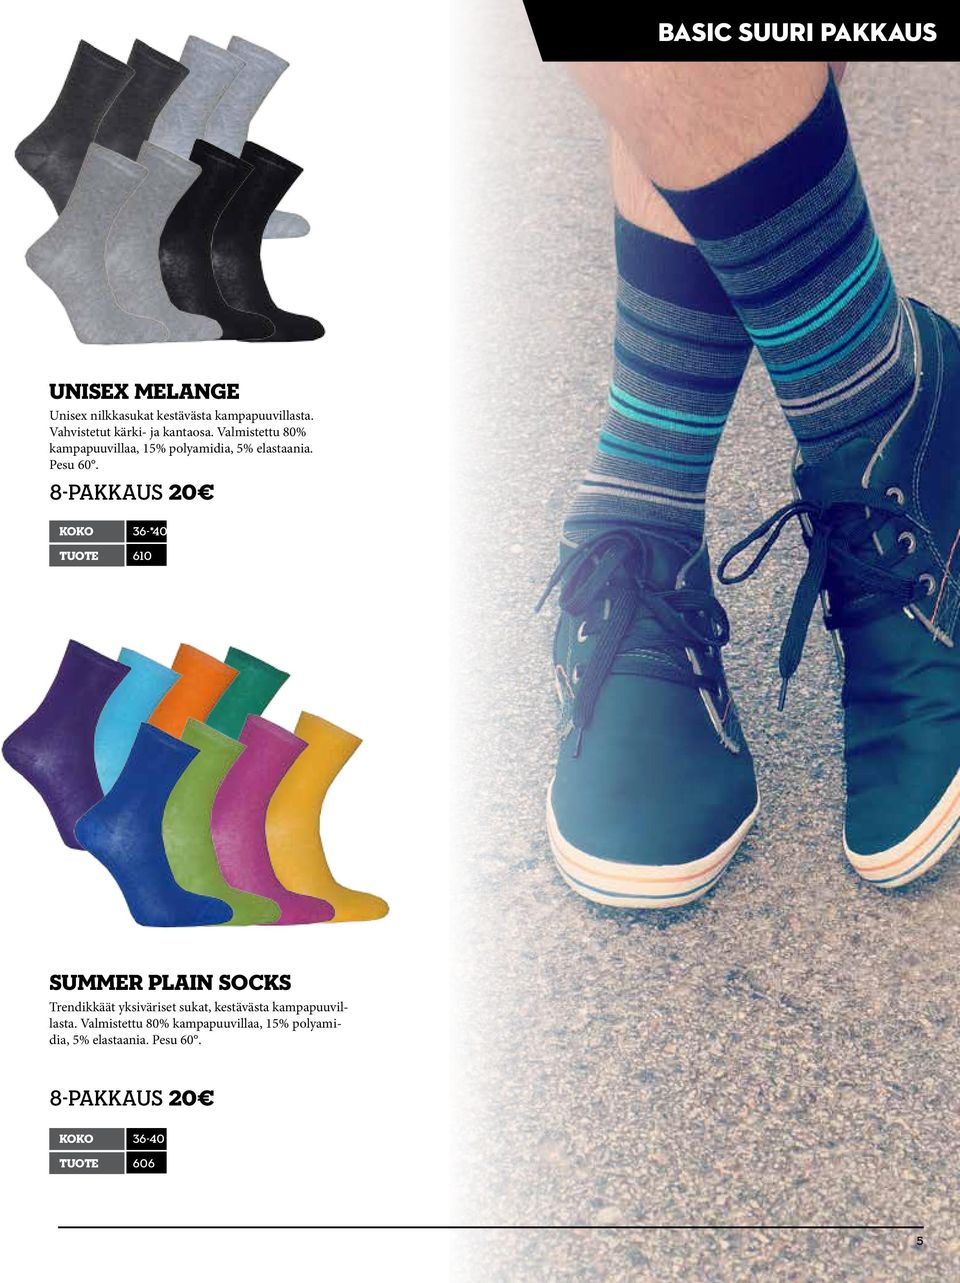 8-pakkaus 20 koko 36-*40 tuote 610 Summer Plain socks Trendikkäät yksiväriset sukat, kestävästa